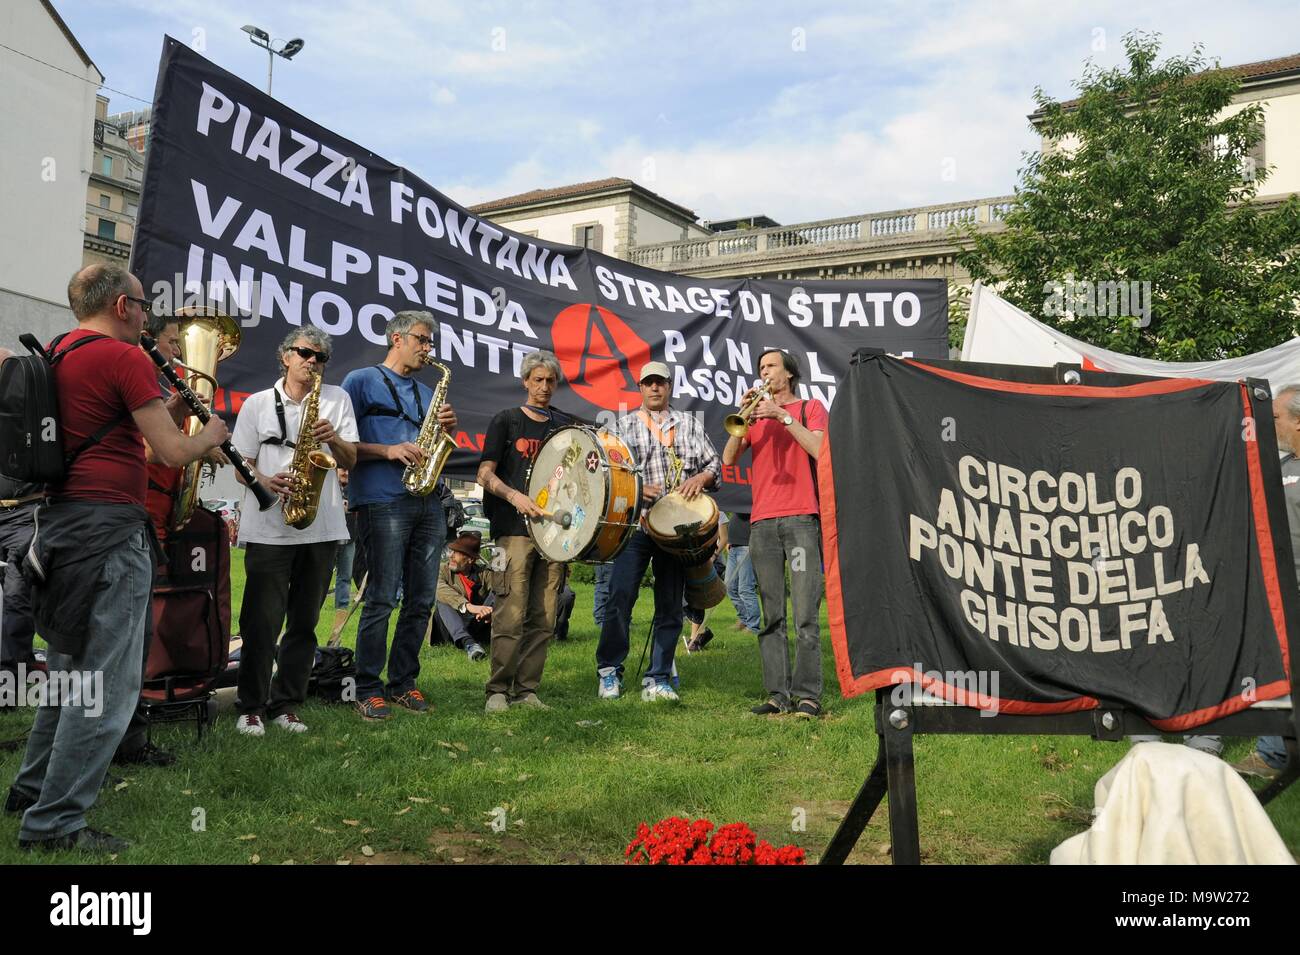 Mailand (Italien), 22. Mai 2016 - Neupositionierung in der Piazza Fontana, die Website der terroristischen Angriff auf die Landwirtschaftlichen Bank im Dezember 1969 die Plakette zu den Anarchisten Pinelli, die zu Unrecht beschuldigt wurde, das das alte ersetzt, abgenutzt von Zeit und Vandalismus Stockfoto